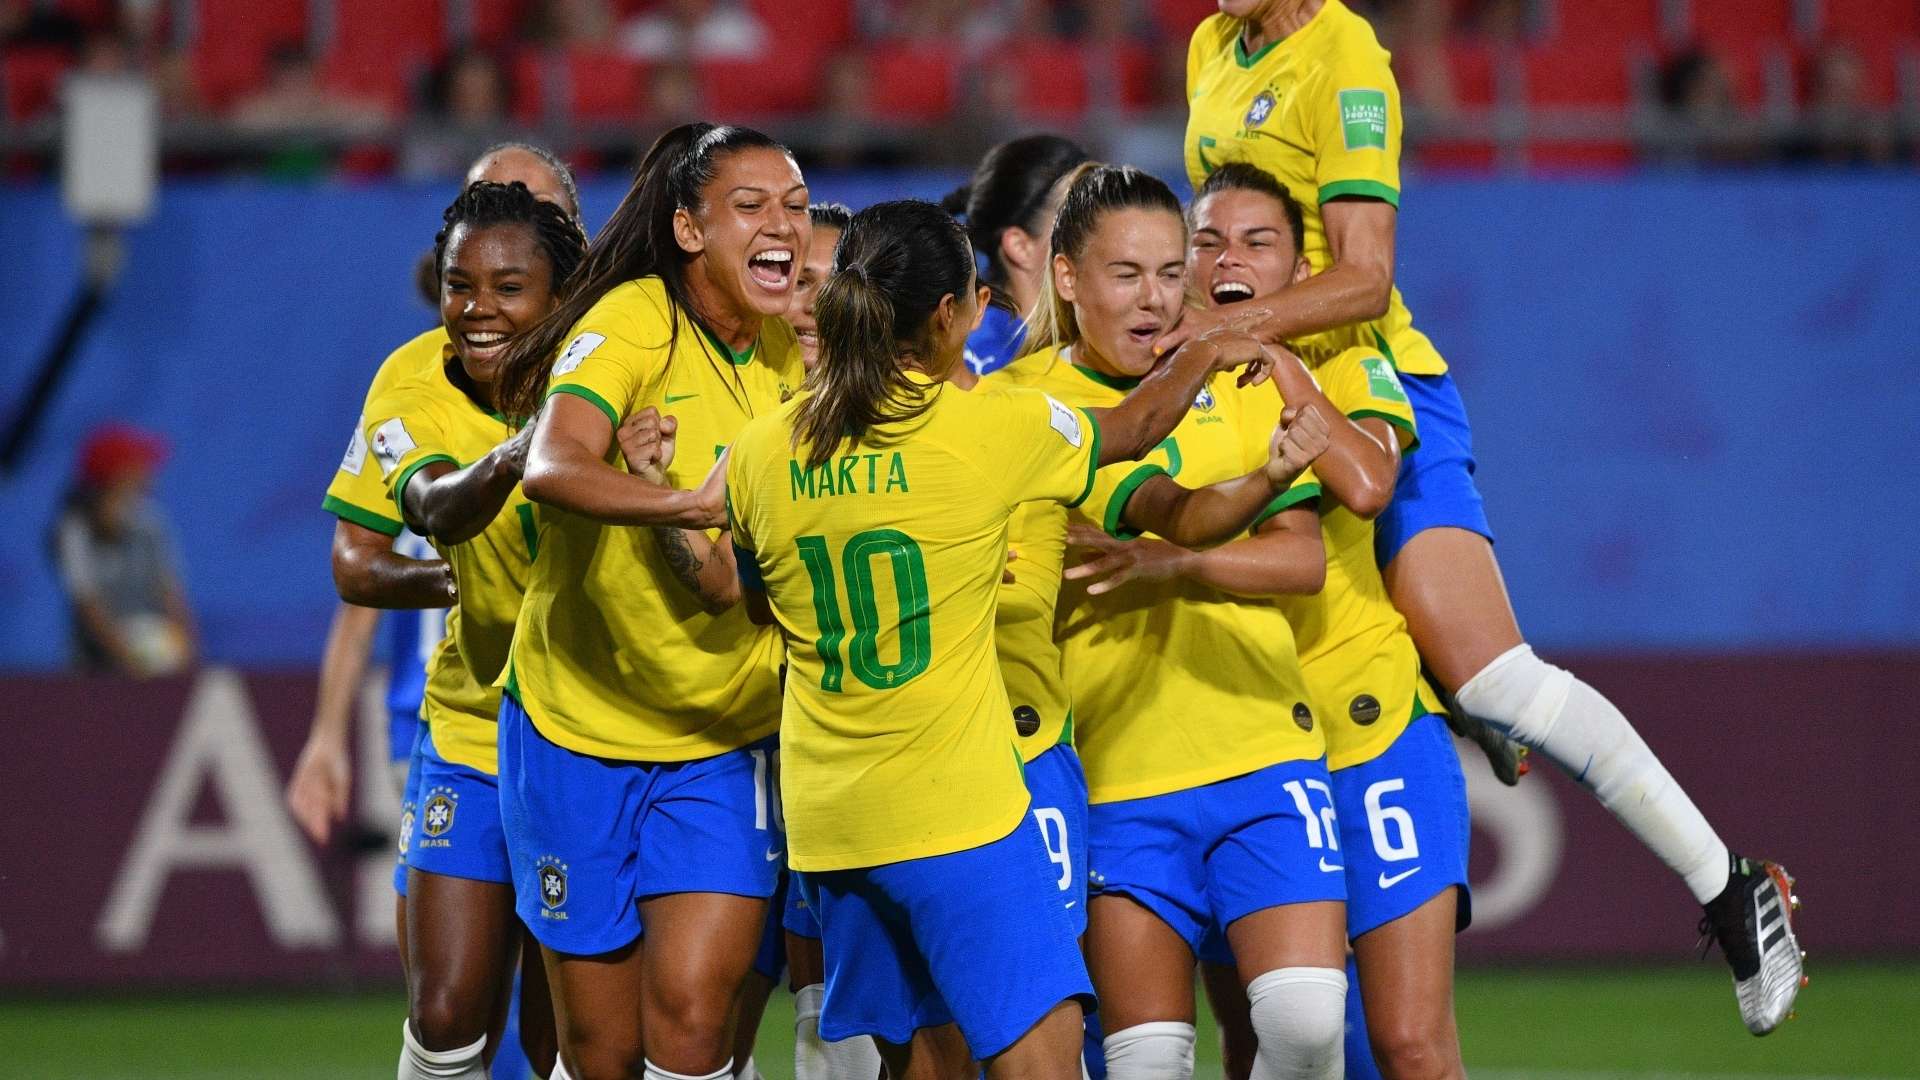 Brazil celebrate Marta goal vs Italy